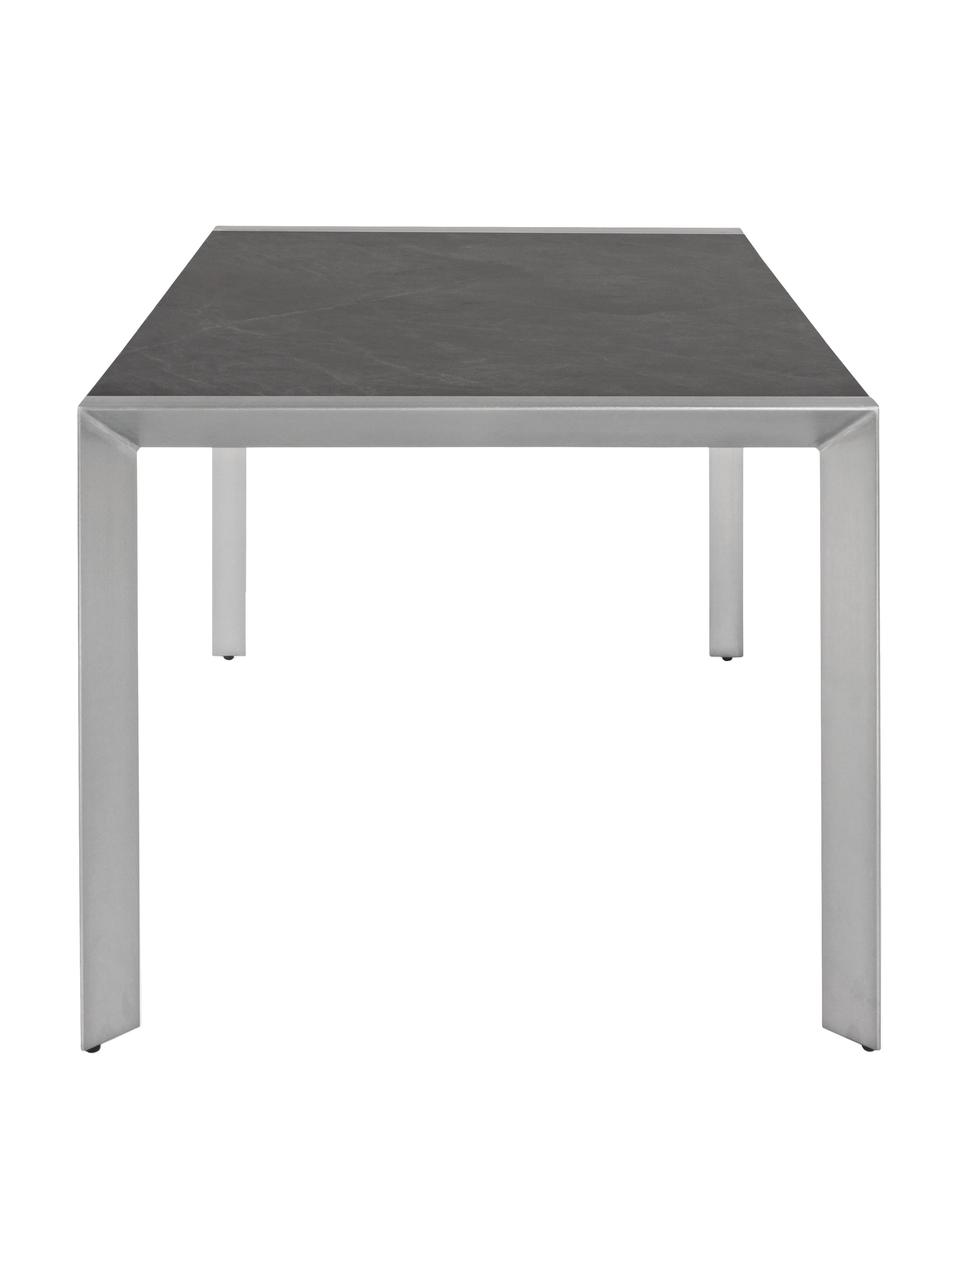 Zahradní jídelní stůl Inez, 198 x 90 cm, Stříbrná, šedá, Š 198 cm, H 90 cm